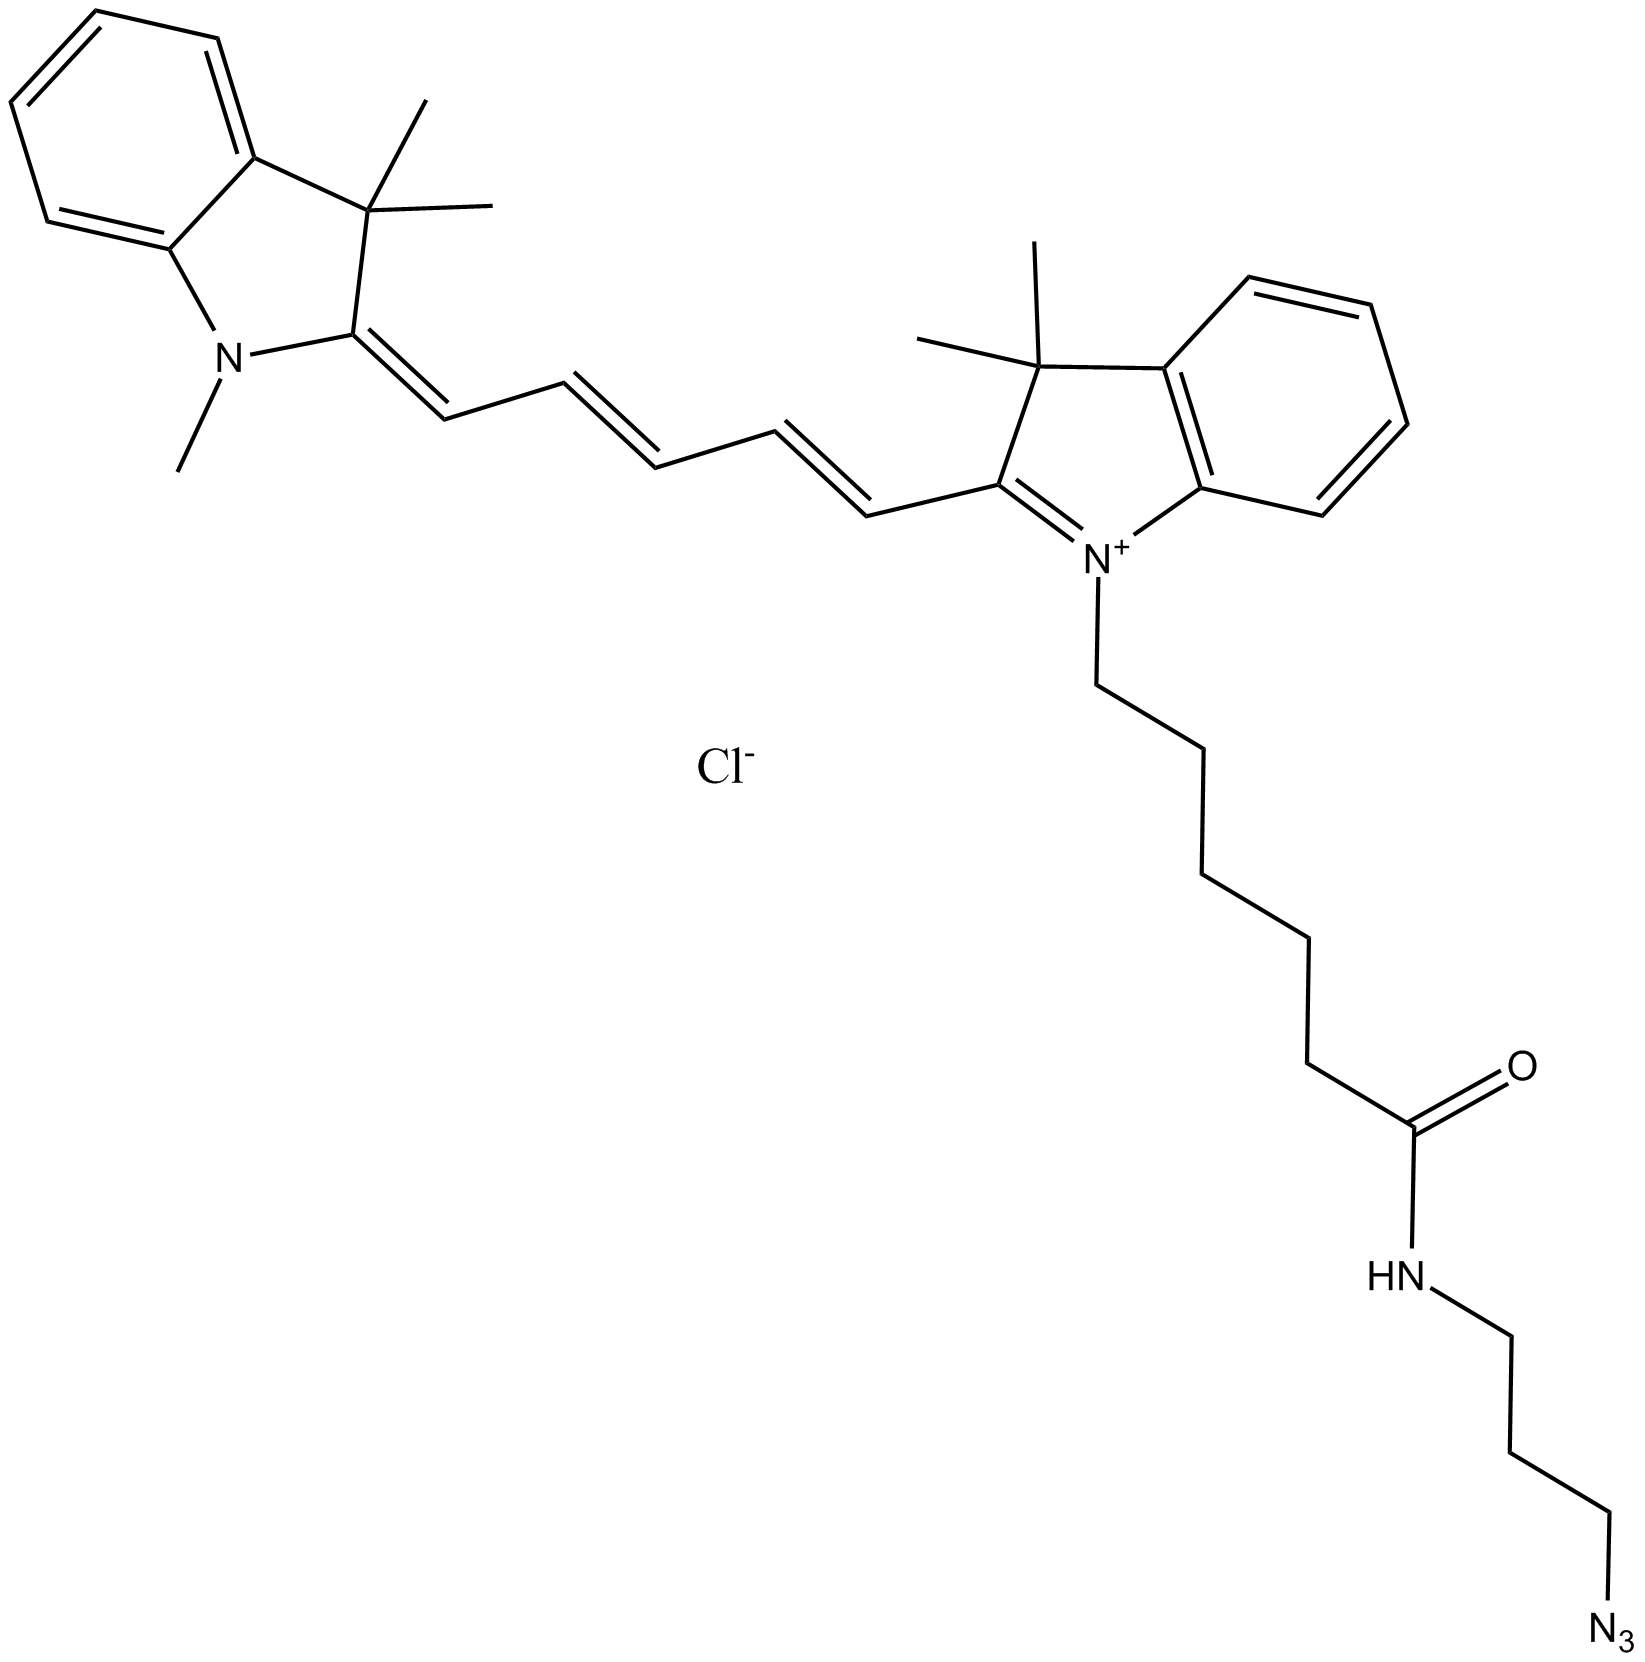 Cy5 azide (non-sulfonated)